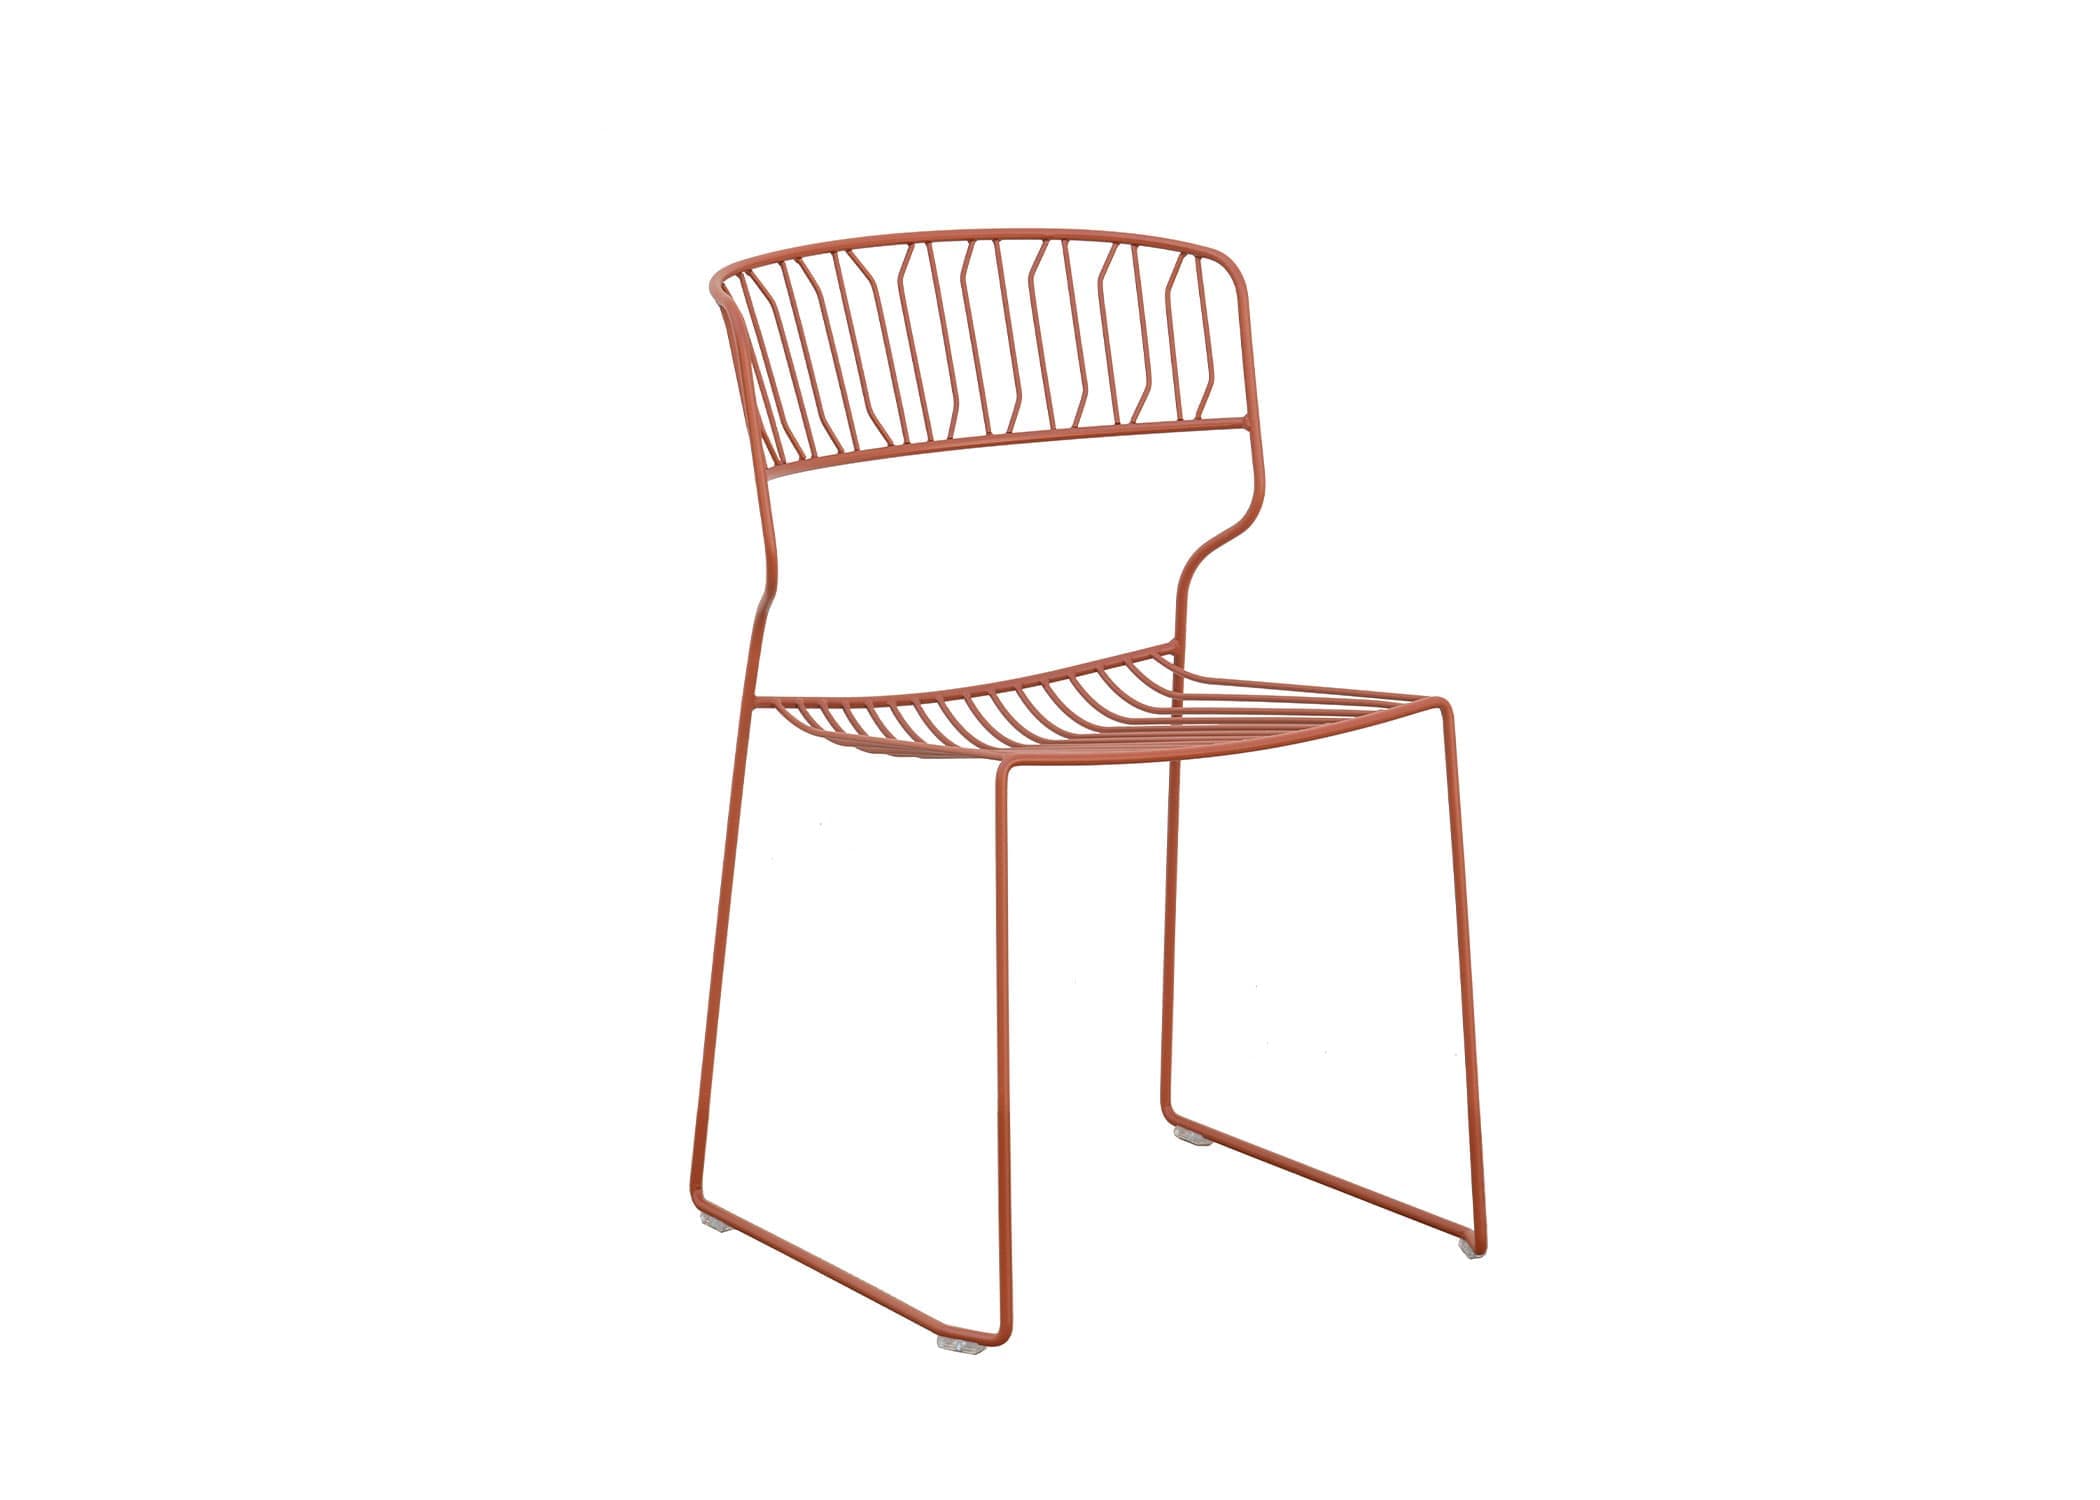 Product Design, Furniture Design